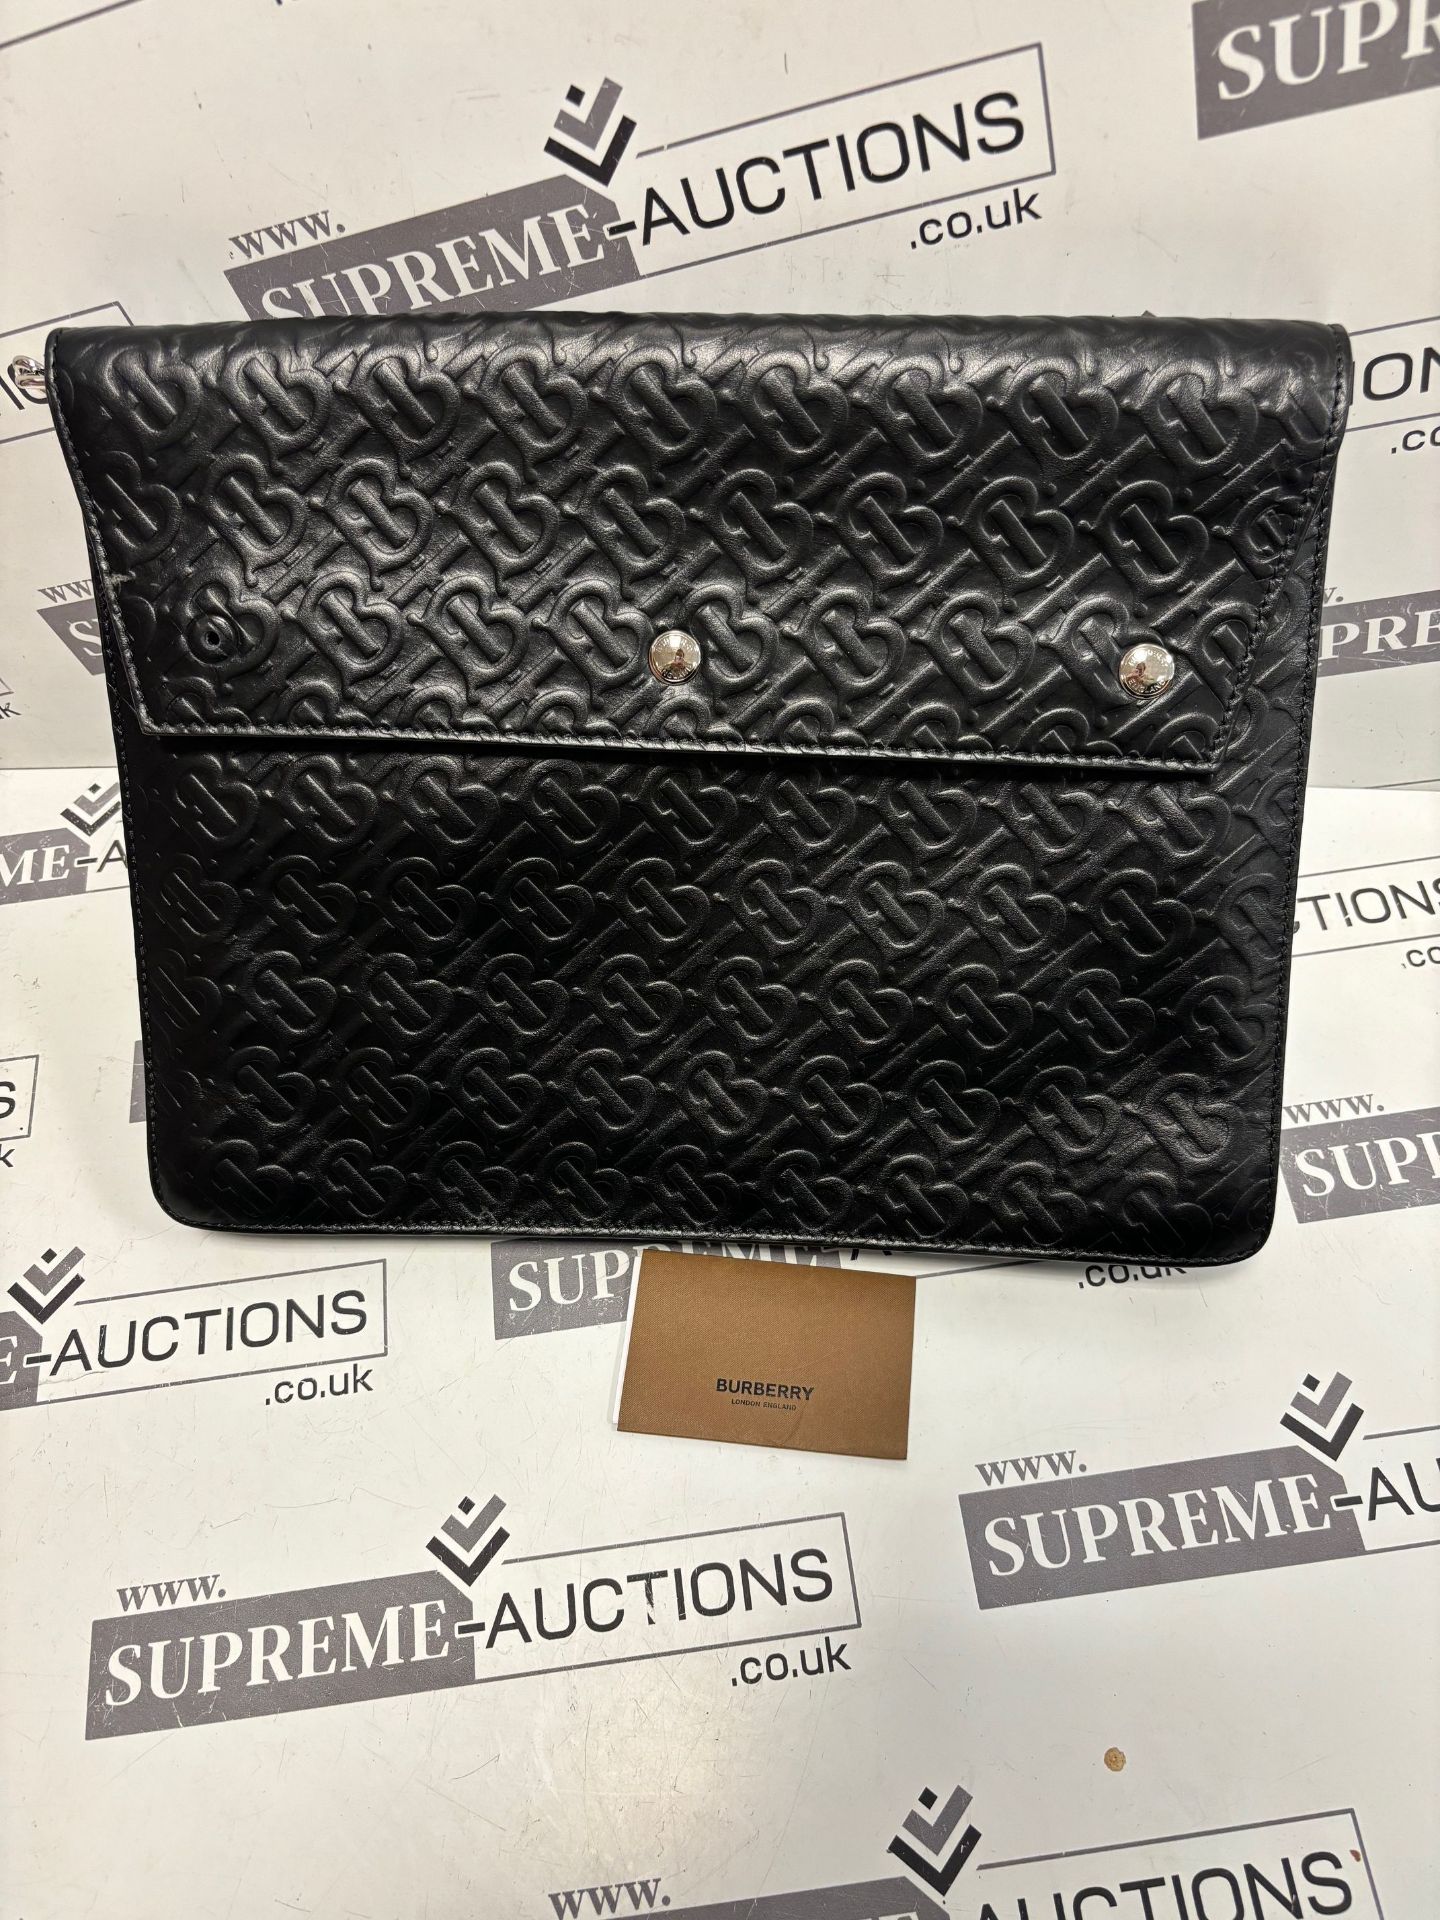 (No Vat) Burberry Envelope clutch, TB embossed leather, Black colour approx 27x35cm. - Bild 6 aus 7